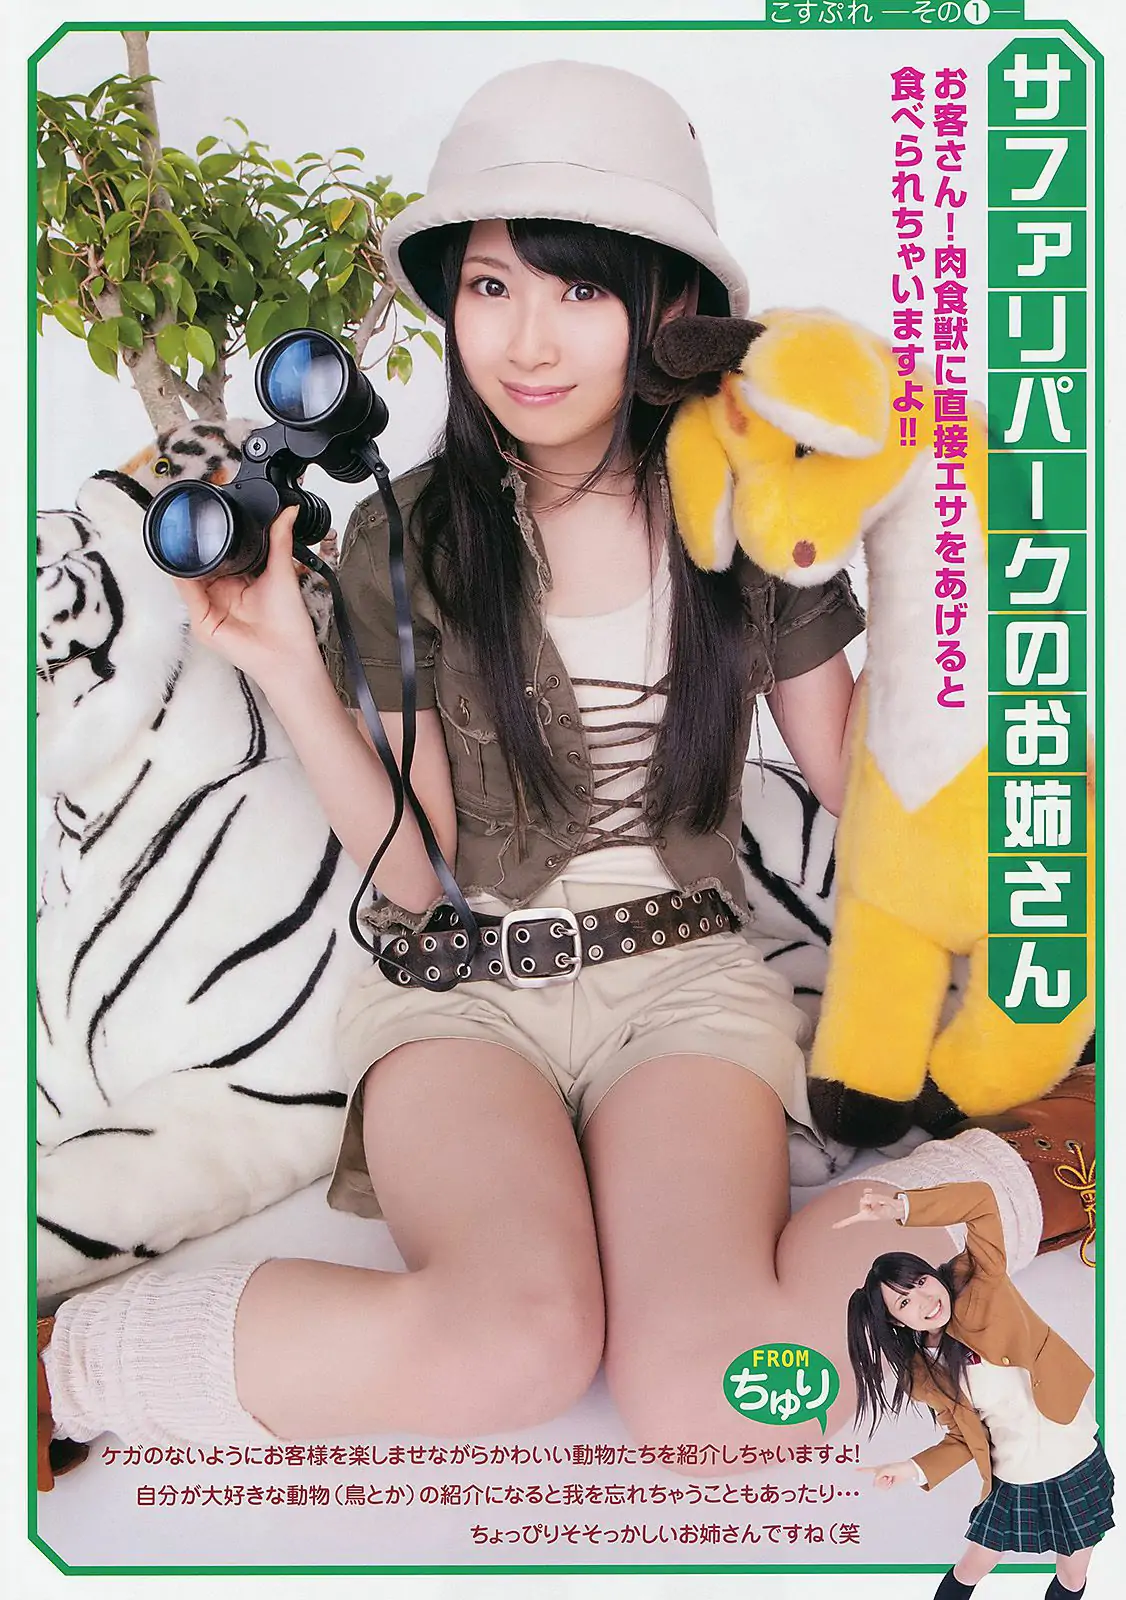 高柳明音 SKE48 藤井シェリー 麻倉憂 神咲詩織 [Young Animal] 2011年No.11 写真杂志